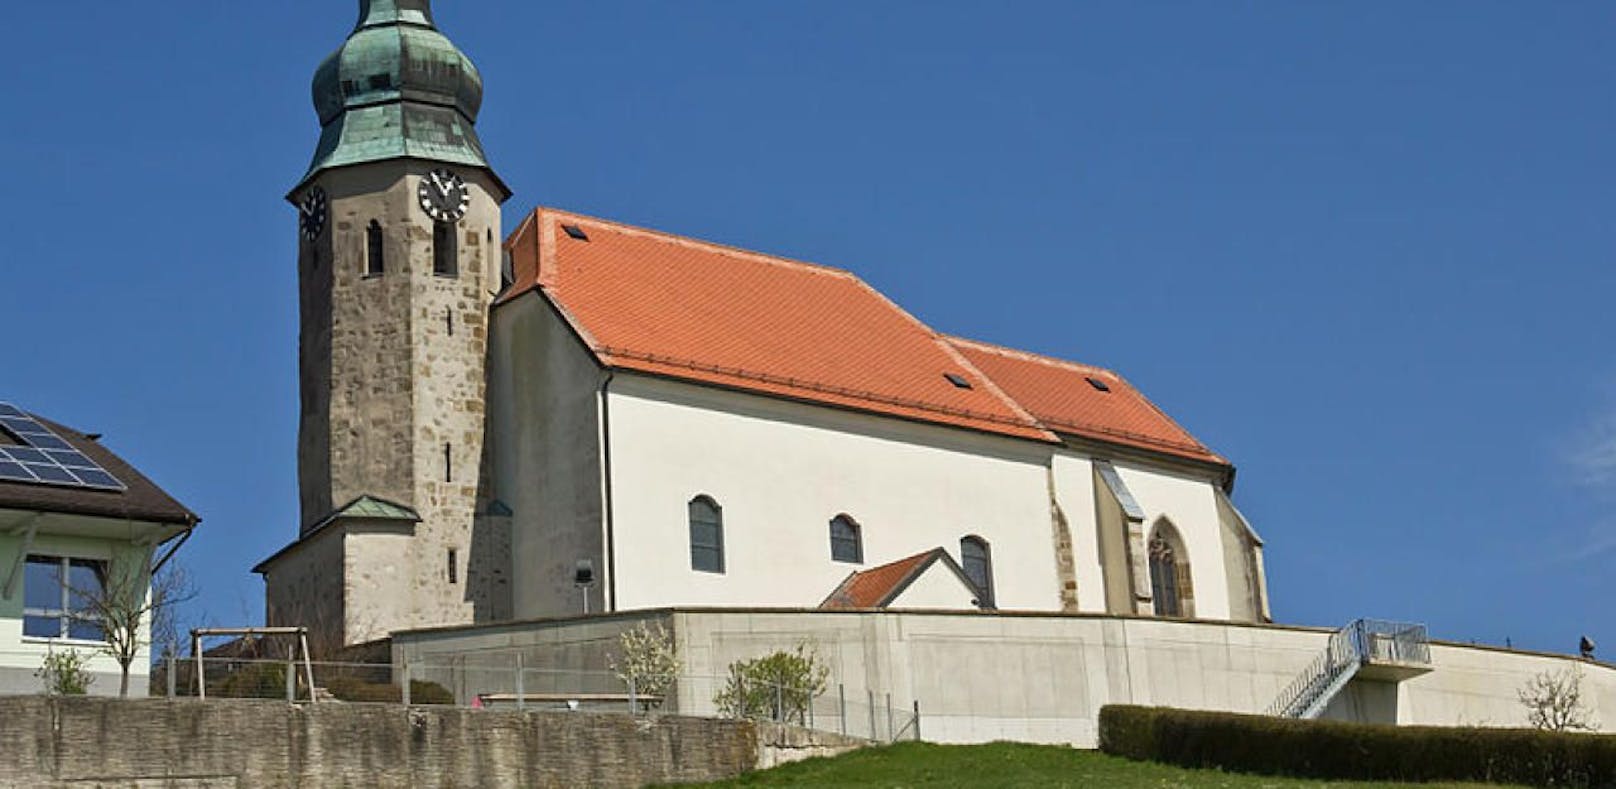 Kath. Pfarrkirche, Wallfahrtskirche hl. Ottilie in Kollmitzberg, einer Katastralgemeinde von Ardagger.